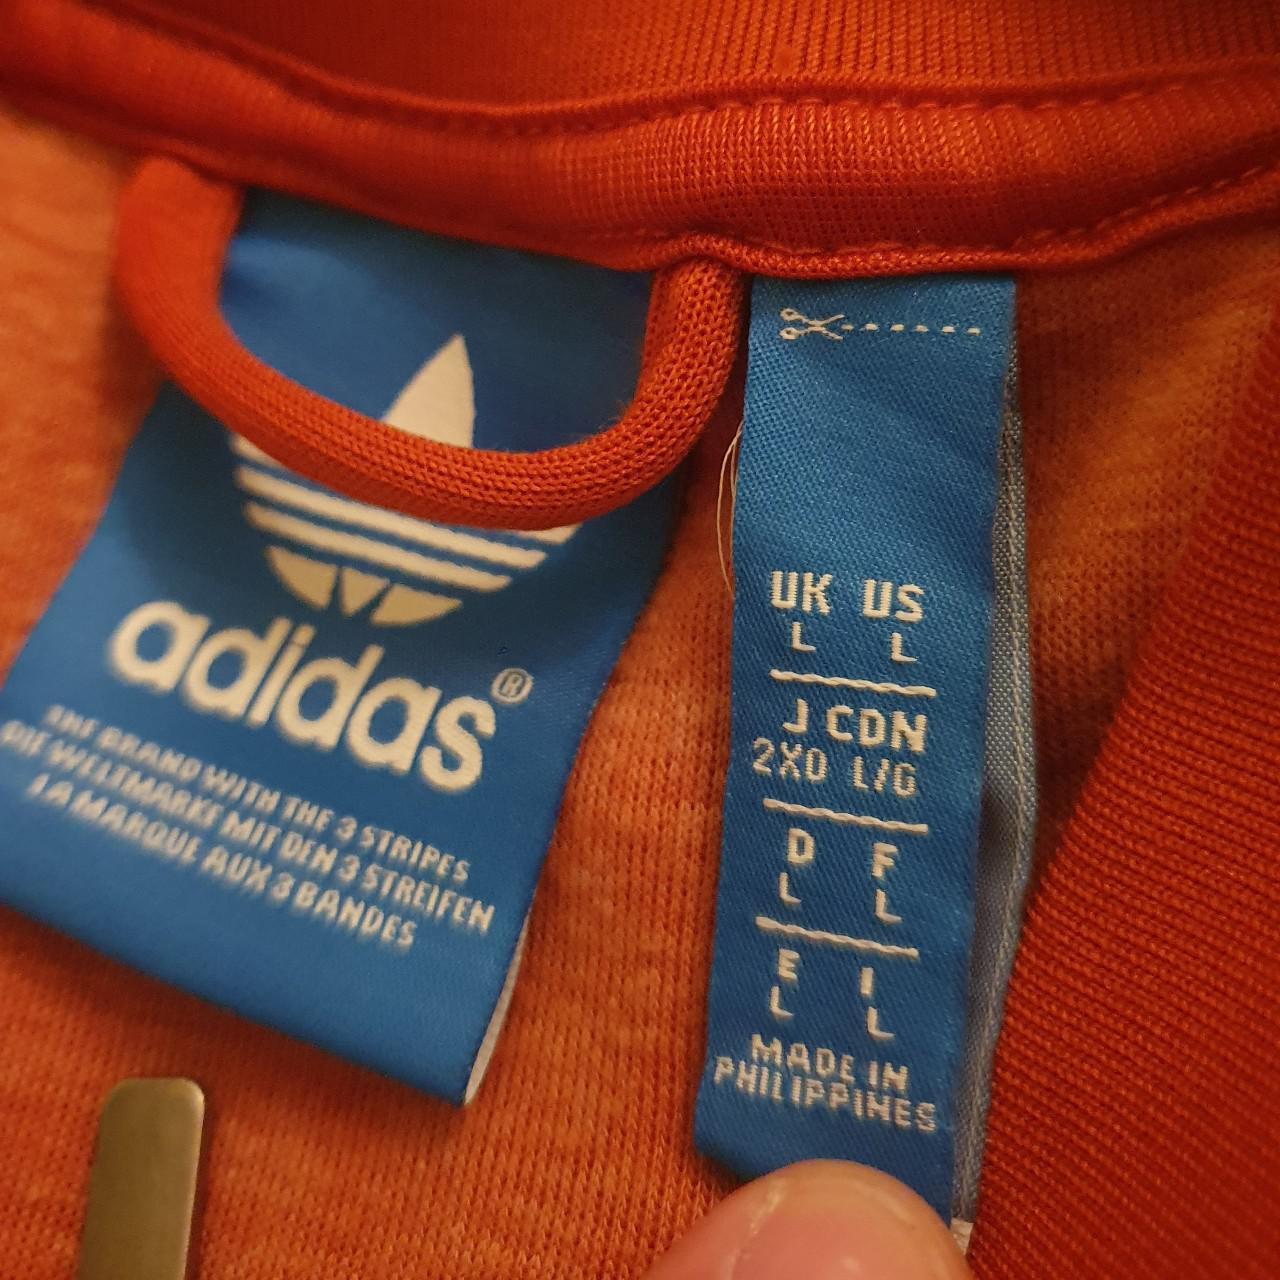 Product Image 2 - Adidas Originals Track Jacket Large